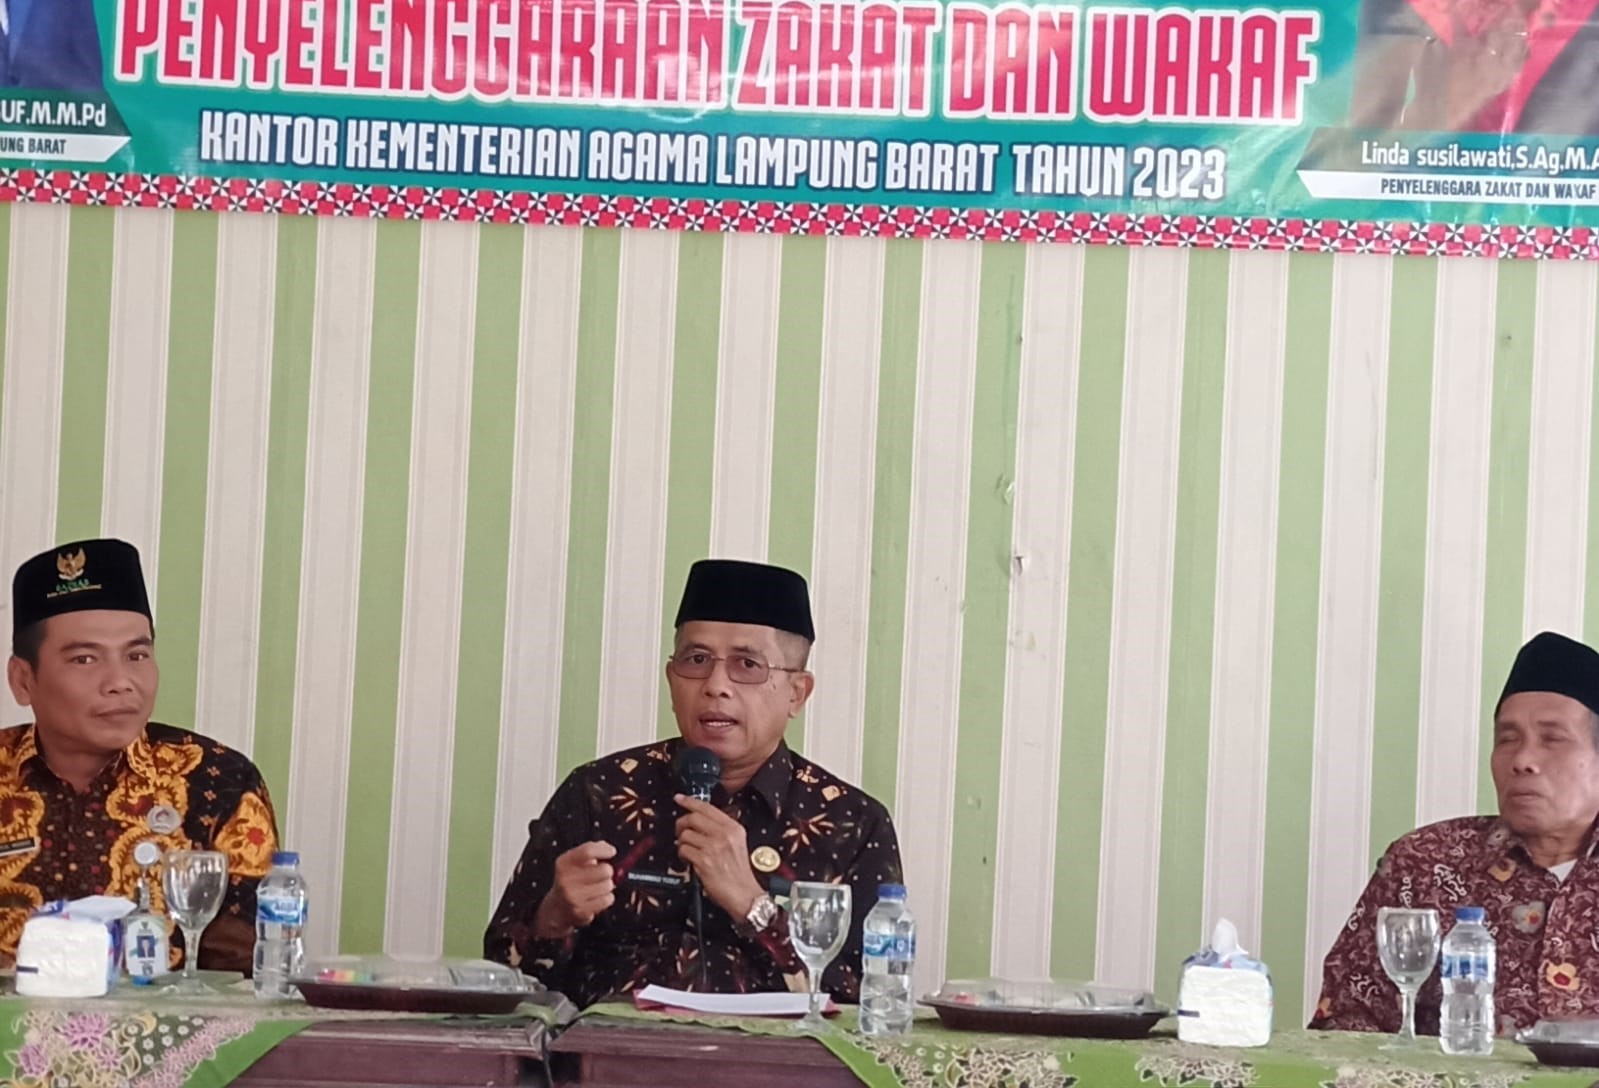 Buka Fasilitasi Penyelenggaraan Zakat Wakaf di Lampung Barat, M. Yusuf Ajak Lebih Giat Berzakat